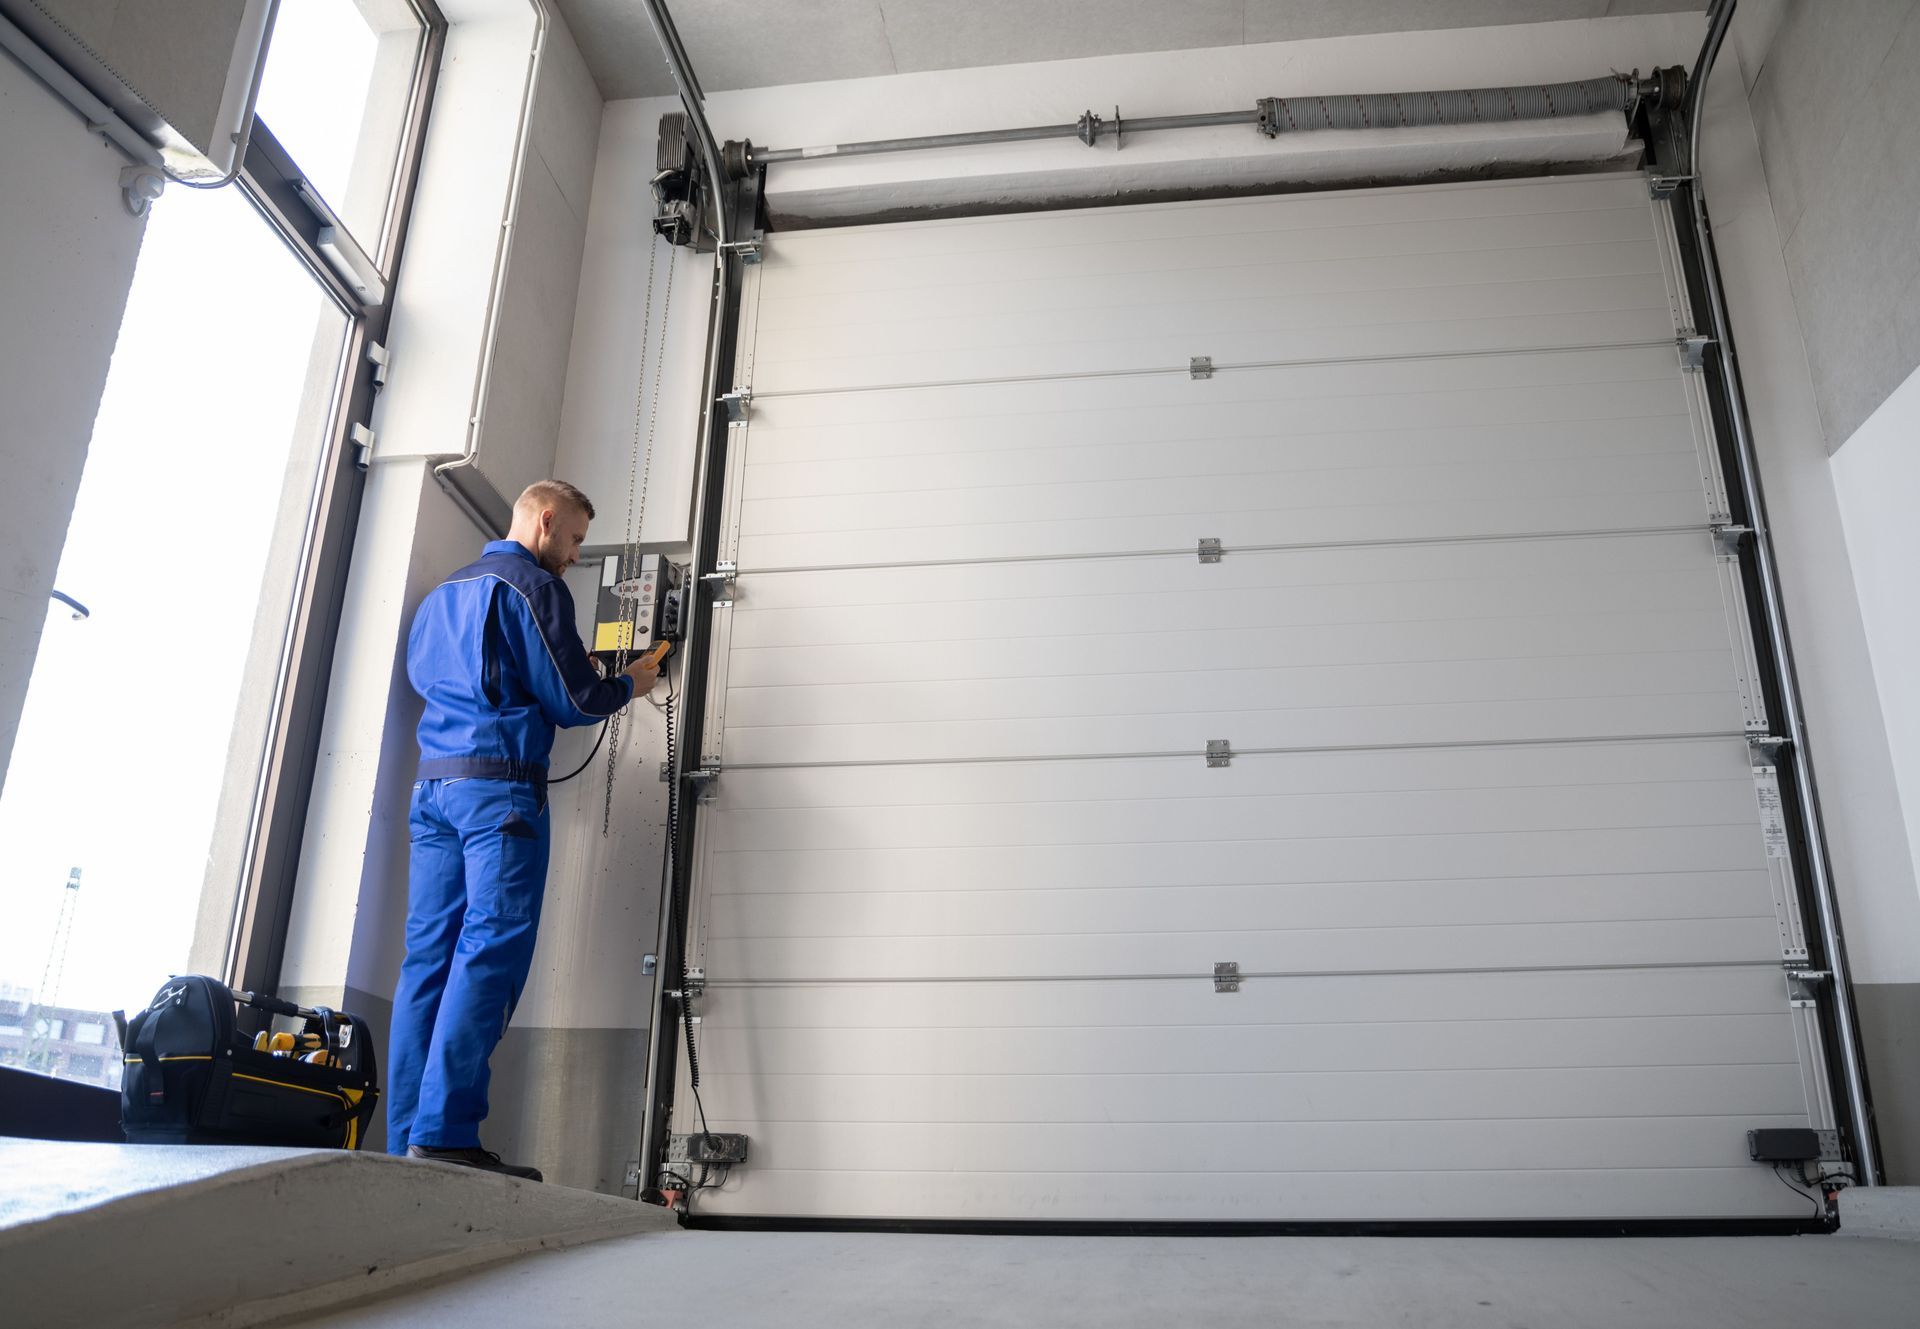 A man is working on a garage door in a garage.